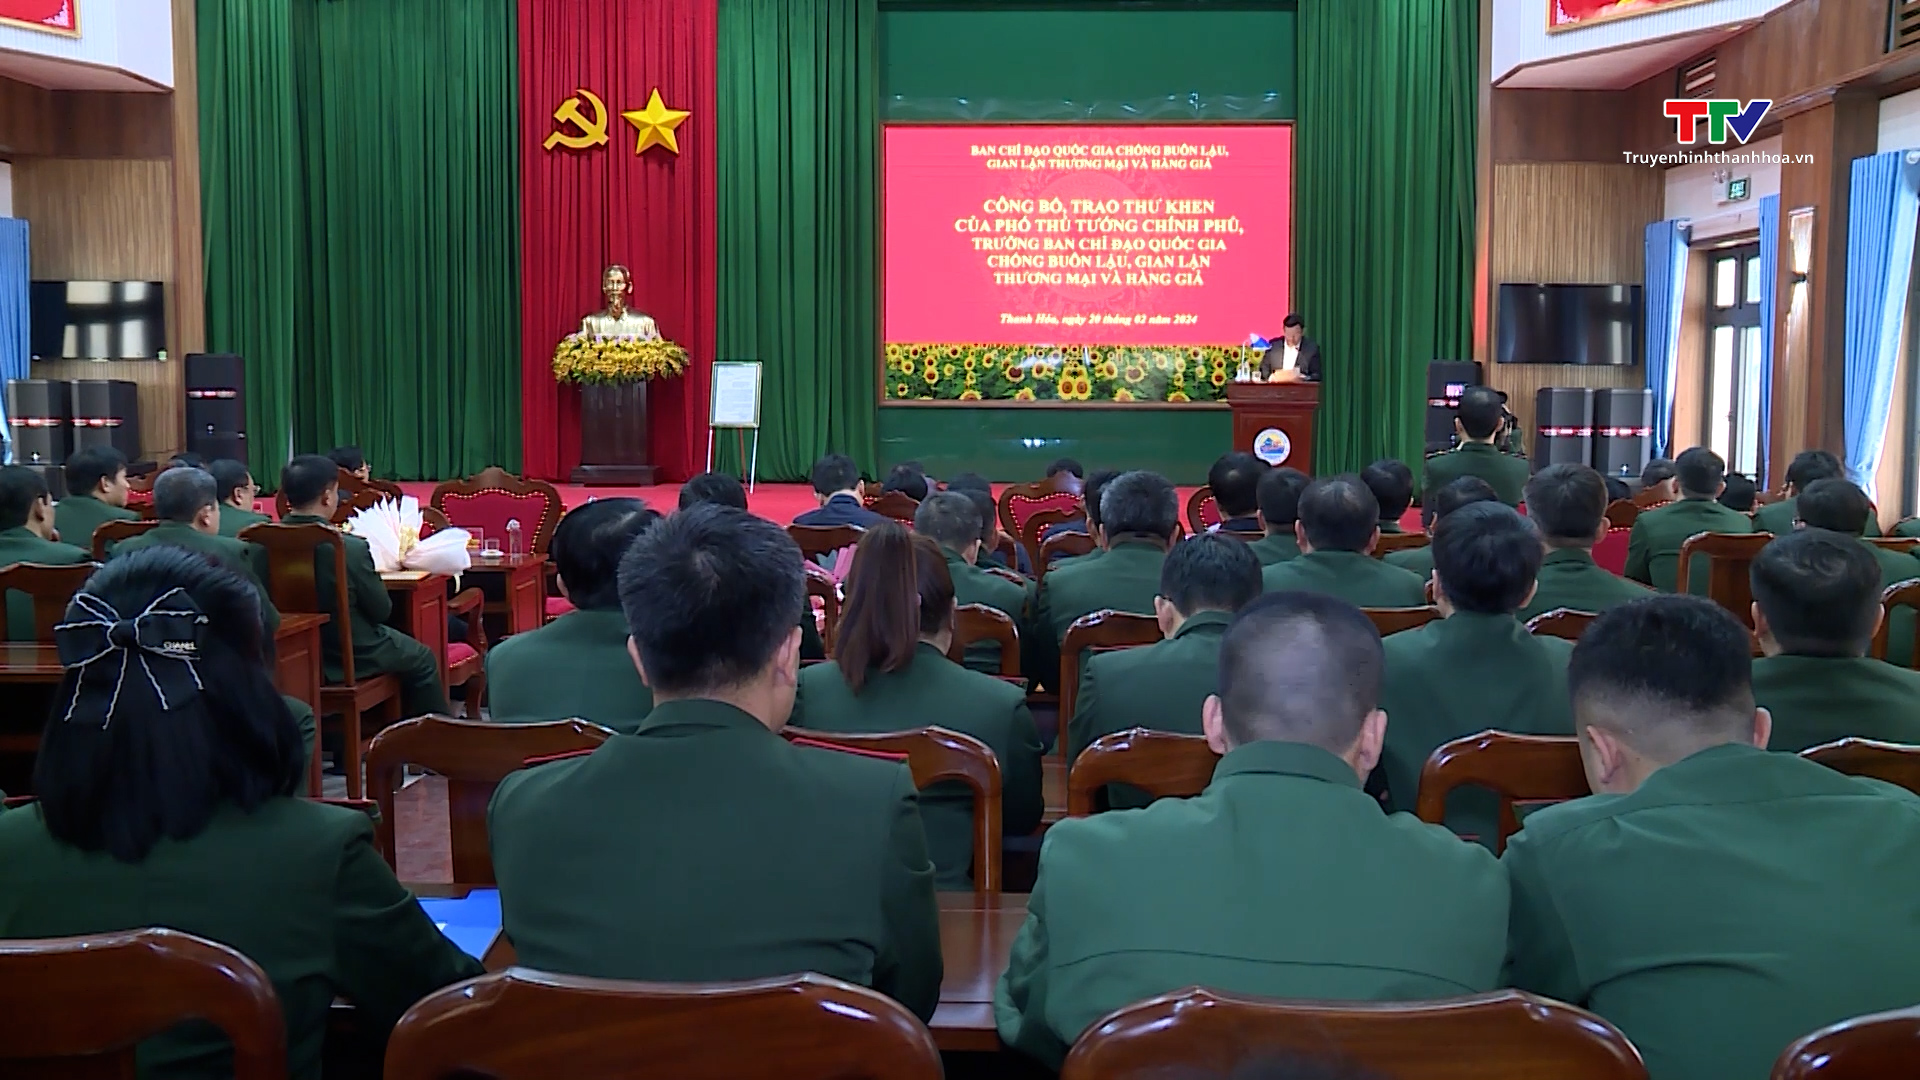 Công bố, trao thư khen của Phó Thủ tướng Chính phủ cho lực lượng thực hiện chuyên án TH823- Ảnh 2.